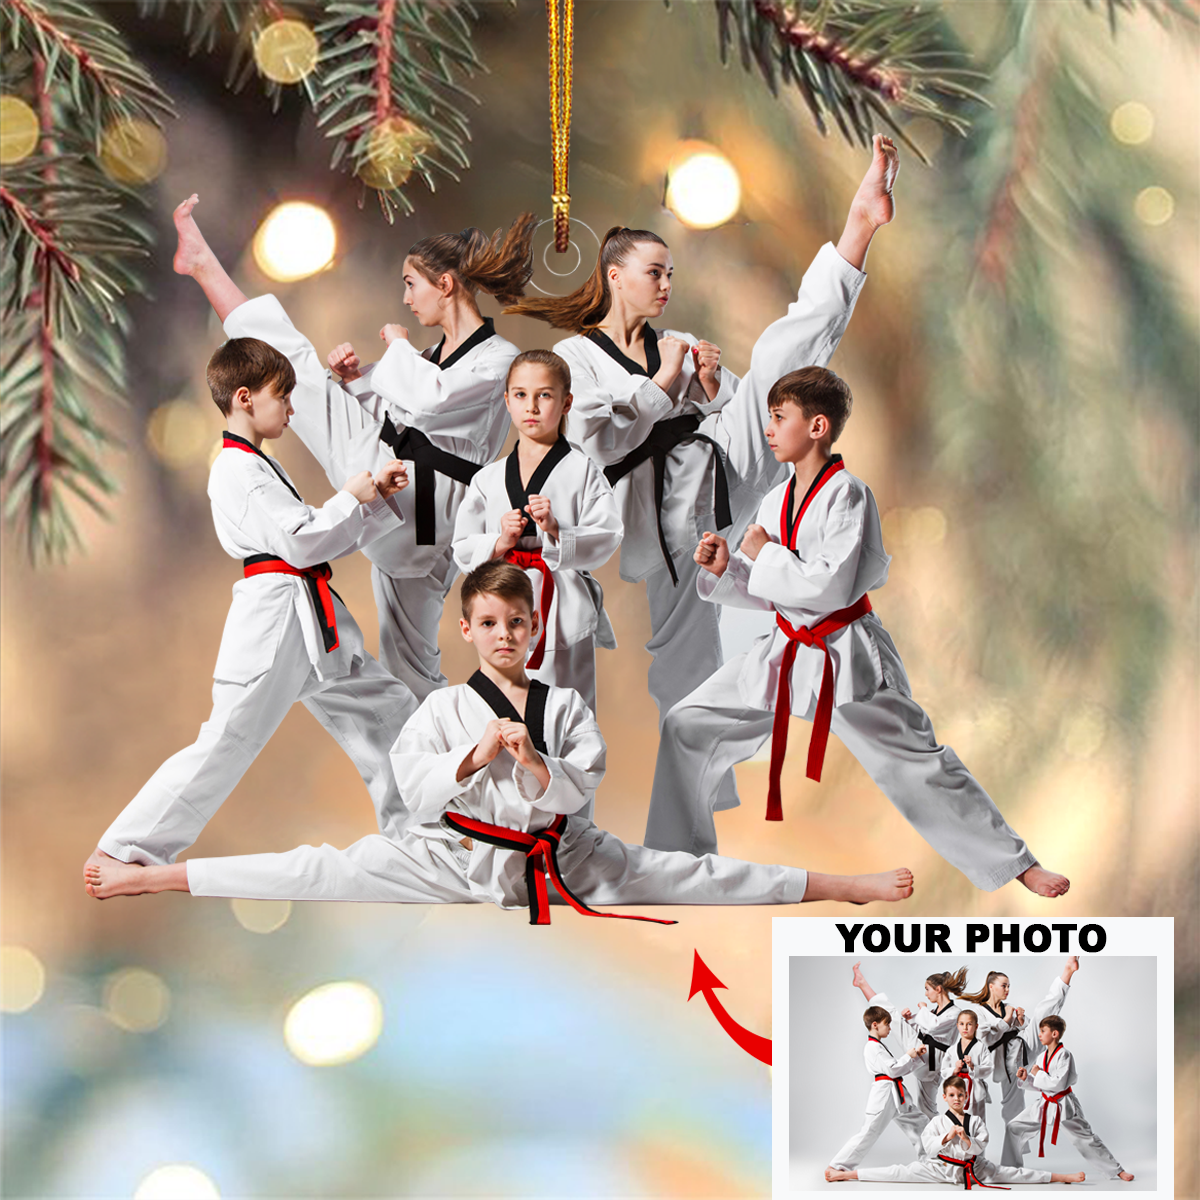 Personalized Taekwondo/Karate Upload Photo Christmas Ornament